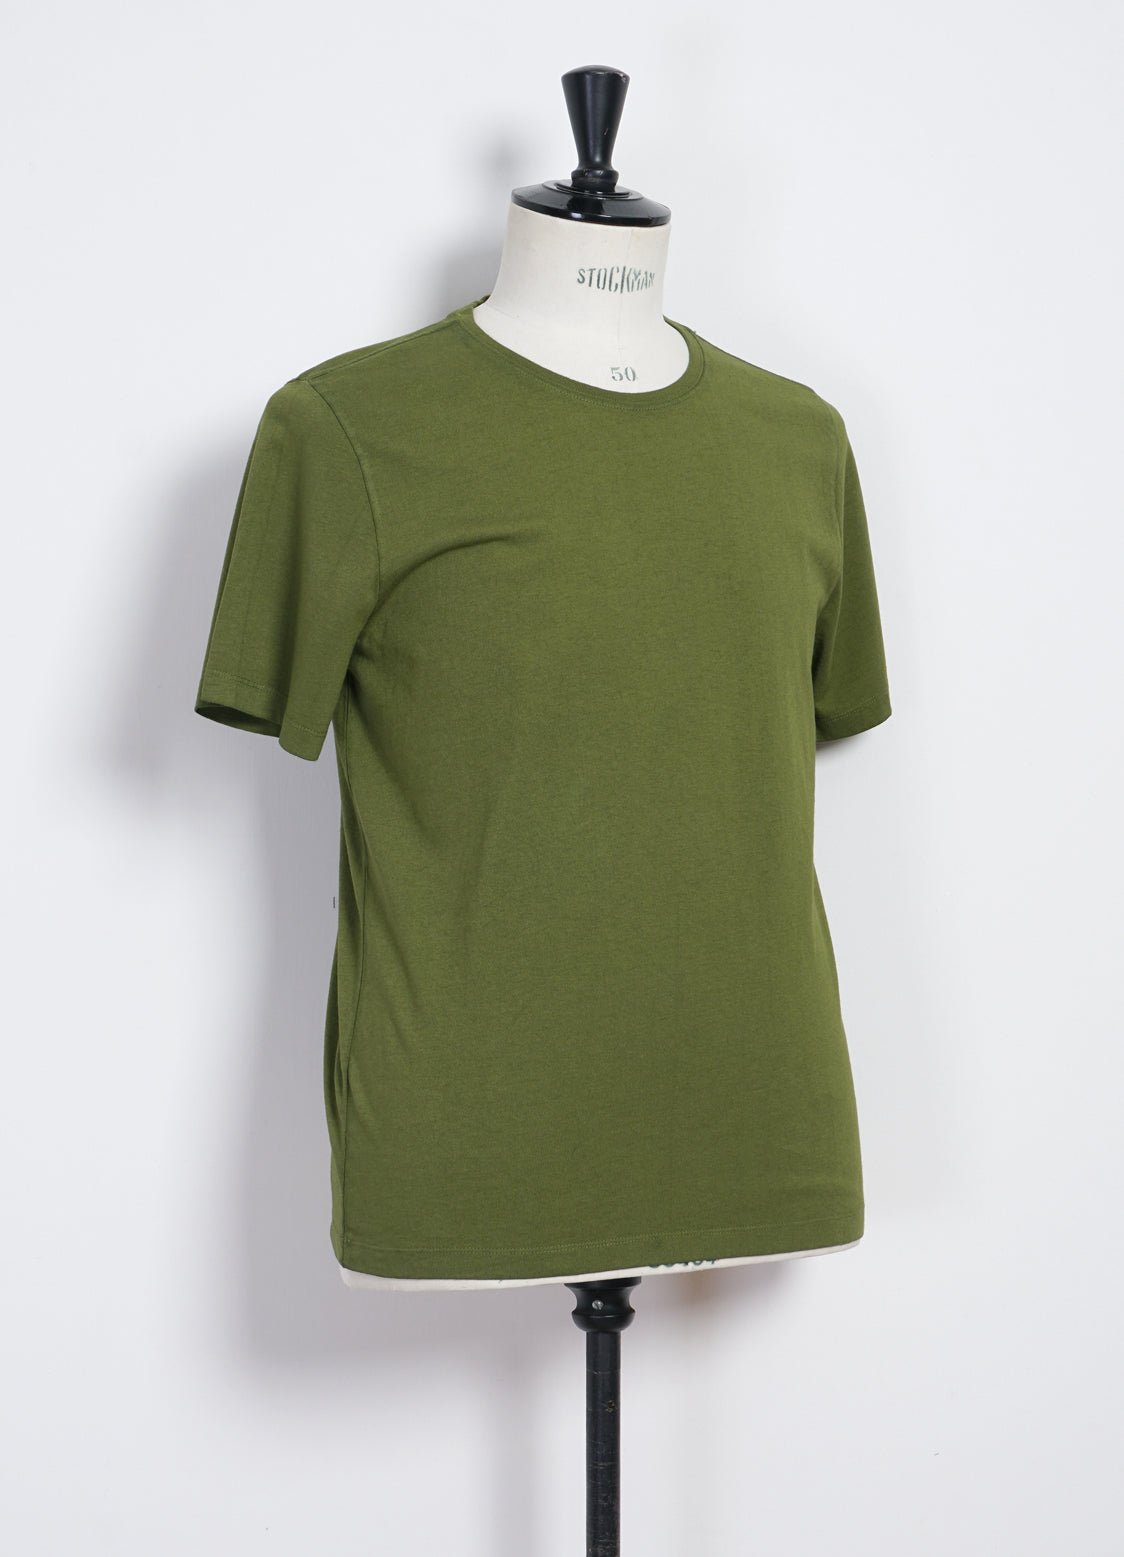 HANSEN GARMENTS - JULIAN | Crew Neck T-Shirt | Cretan Green - HANSEN Garments